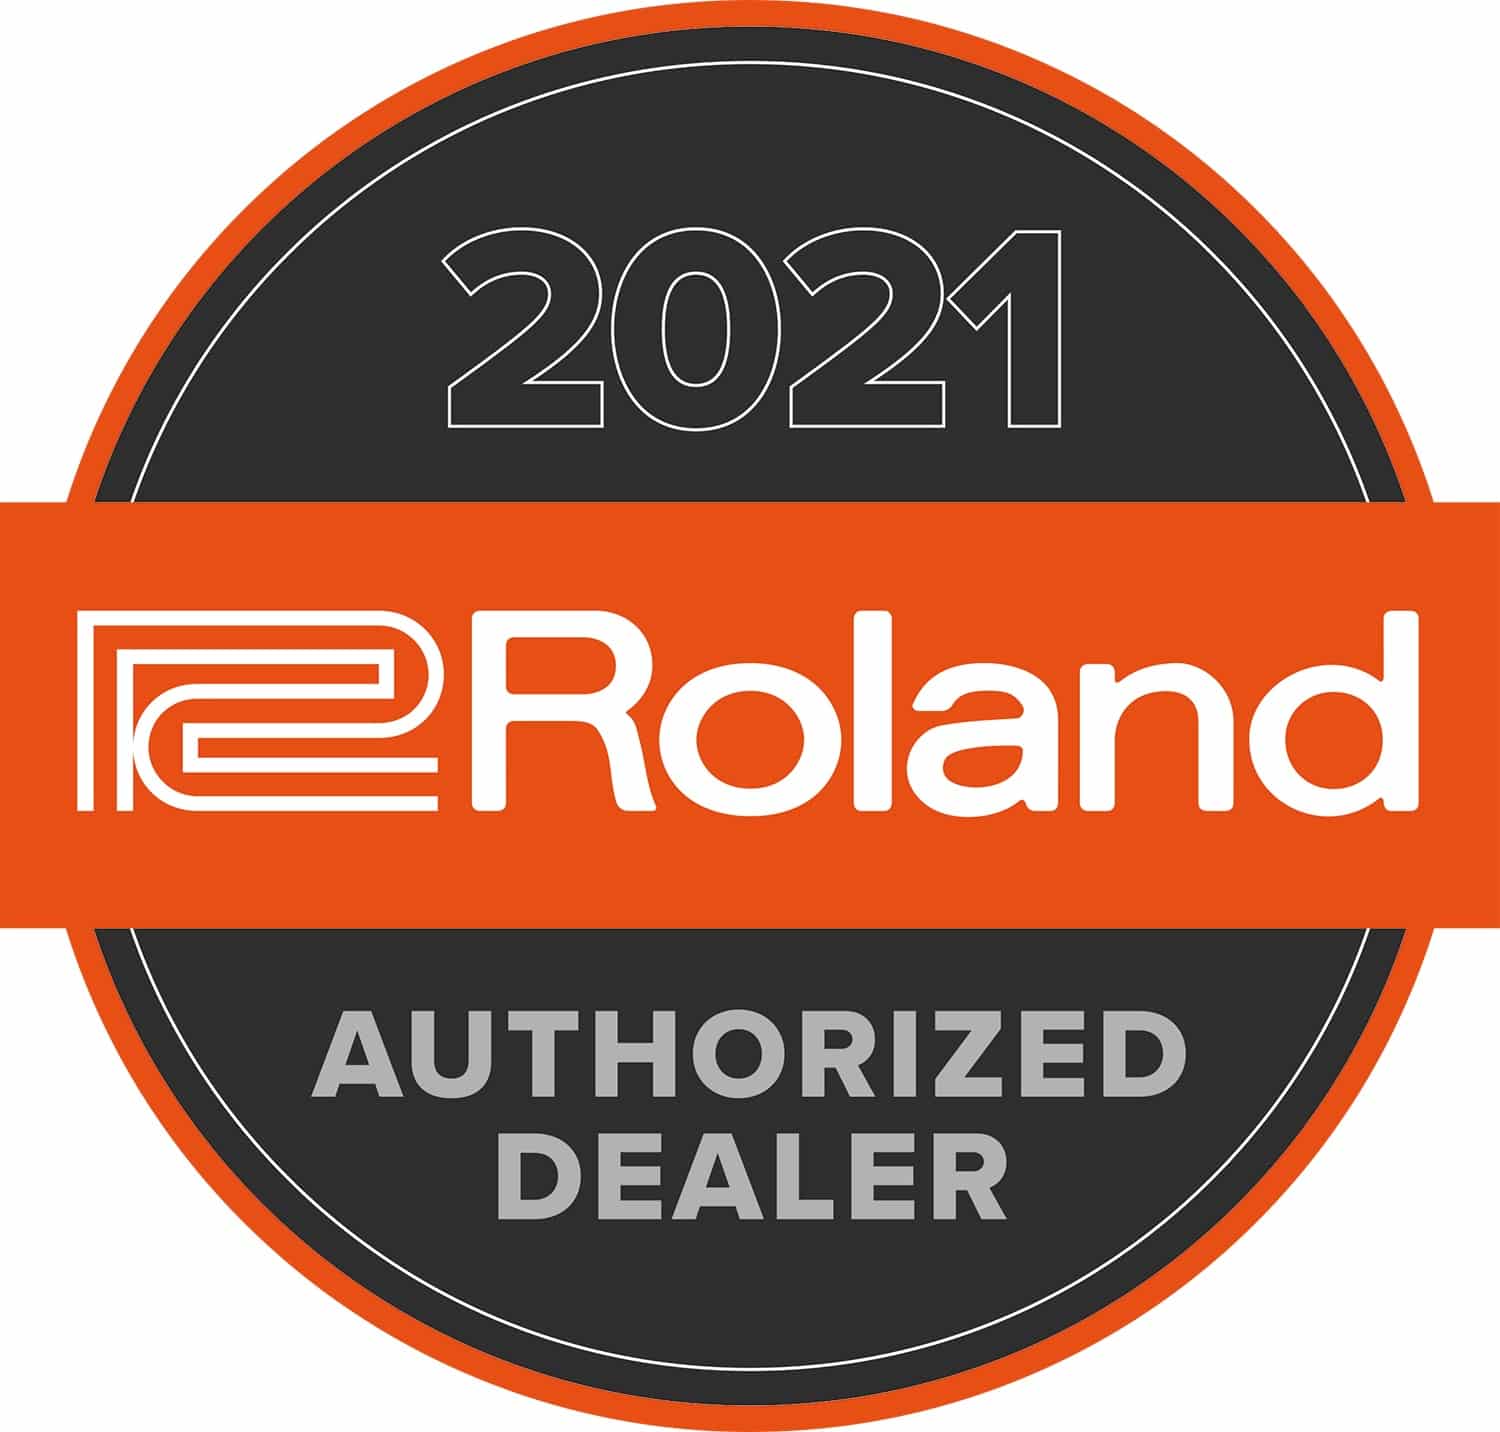 Roland LX 708 disponible au meilleur prix - Nebout & Hamm Paris